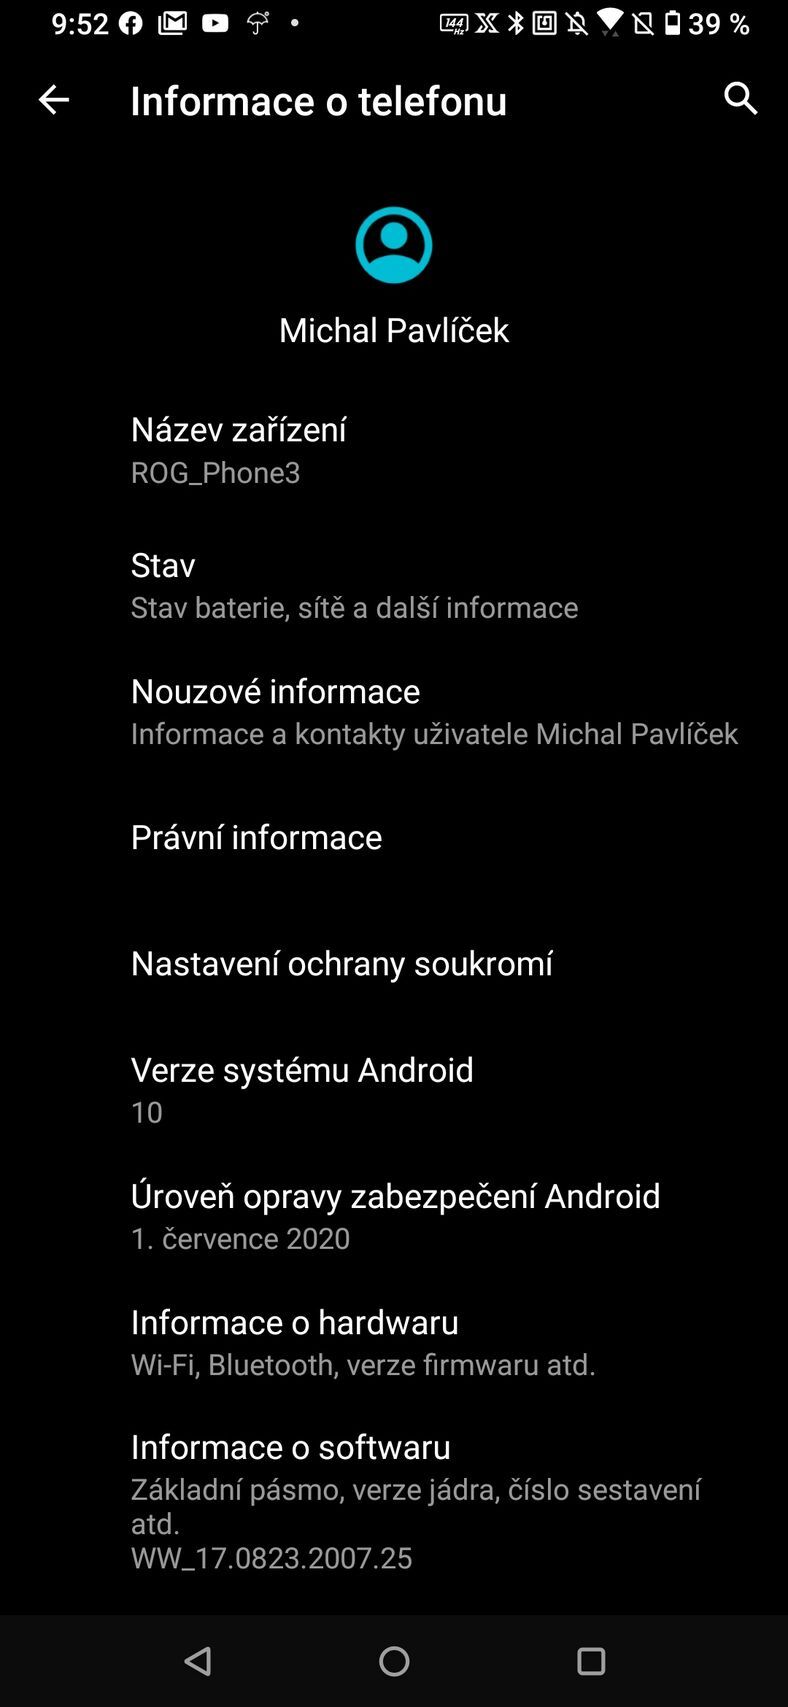 ASUS ROG Phone 3